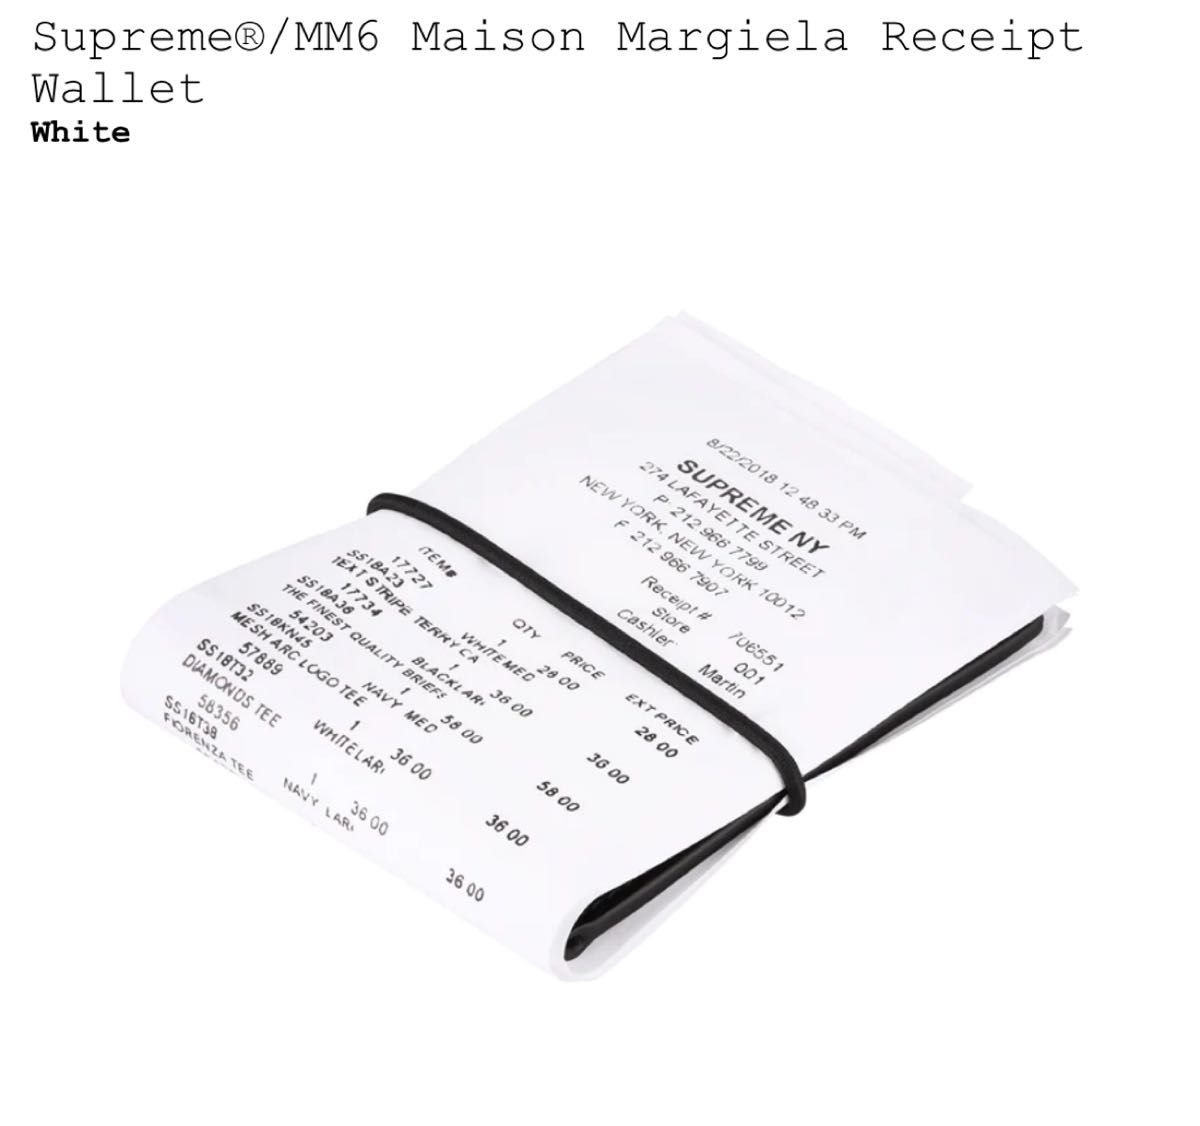 Supreme MM6 Maison Margiela Receipt Wallet 財布